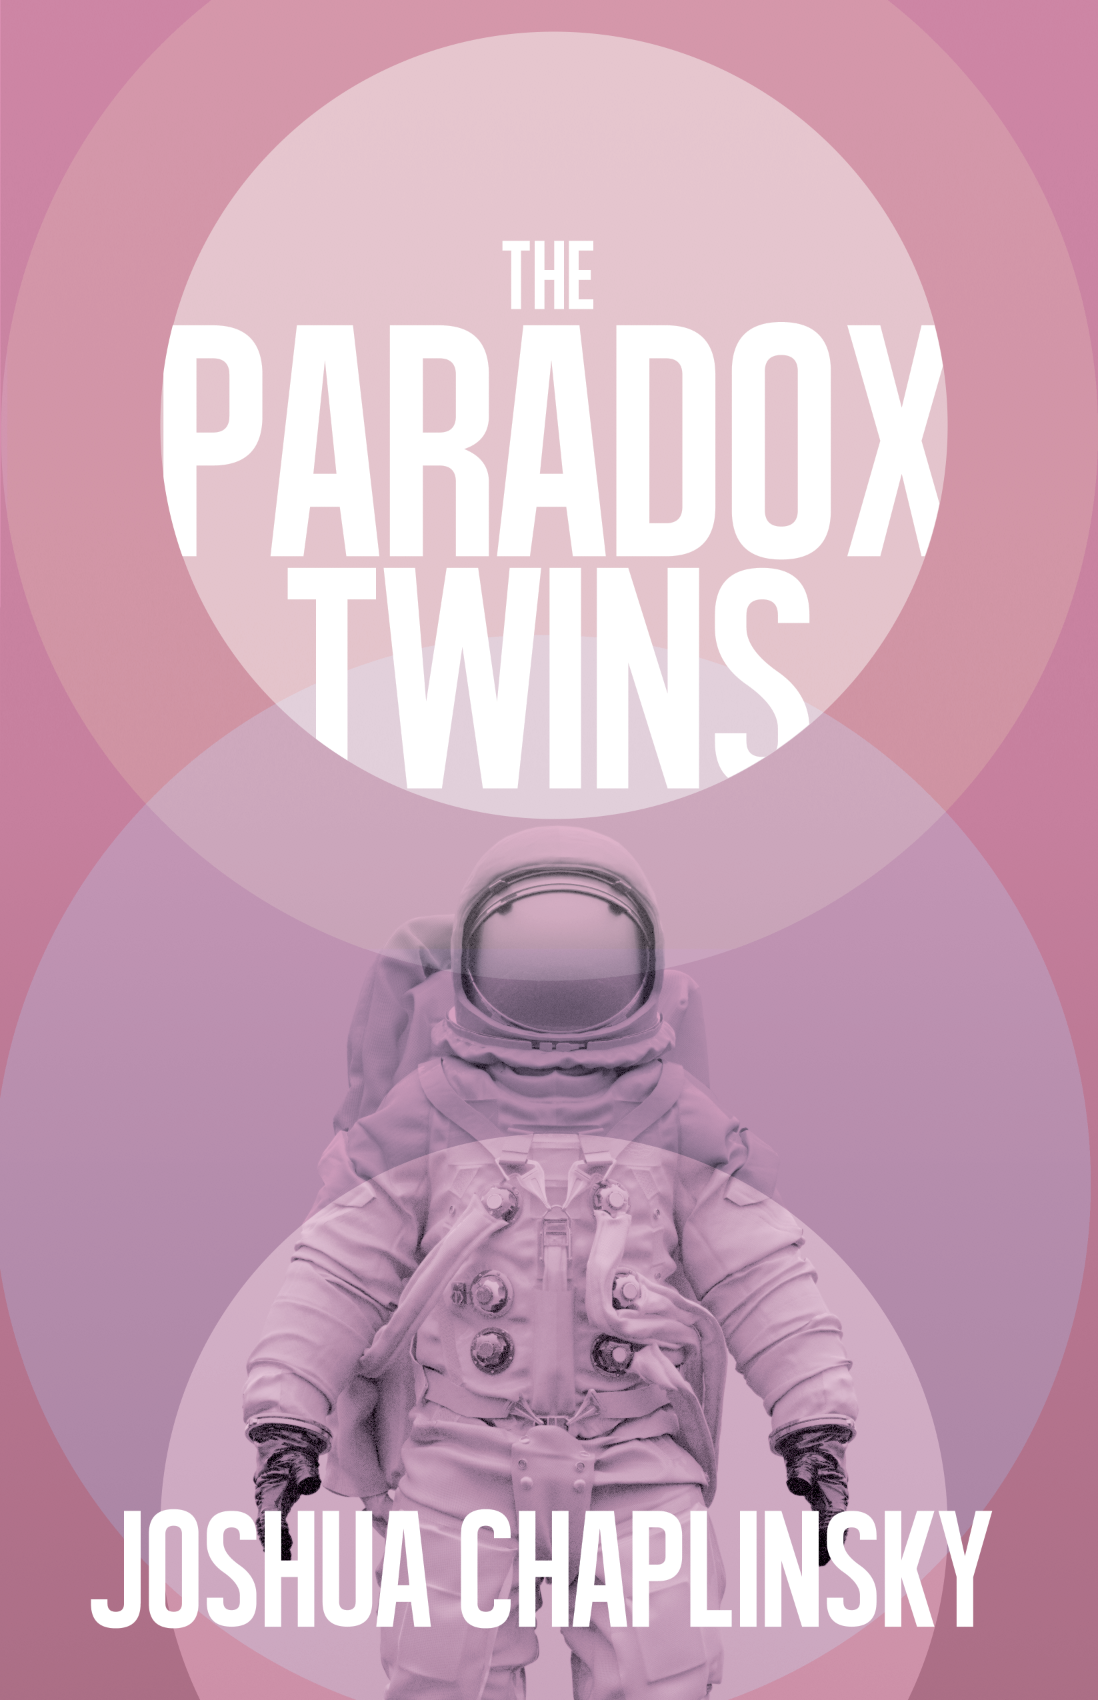 [EPUB] The Paradox Twins by Joshua Chaplinsky